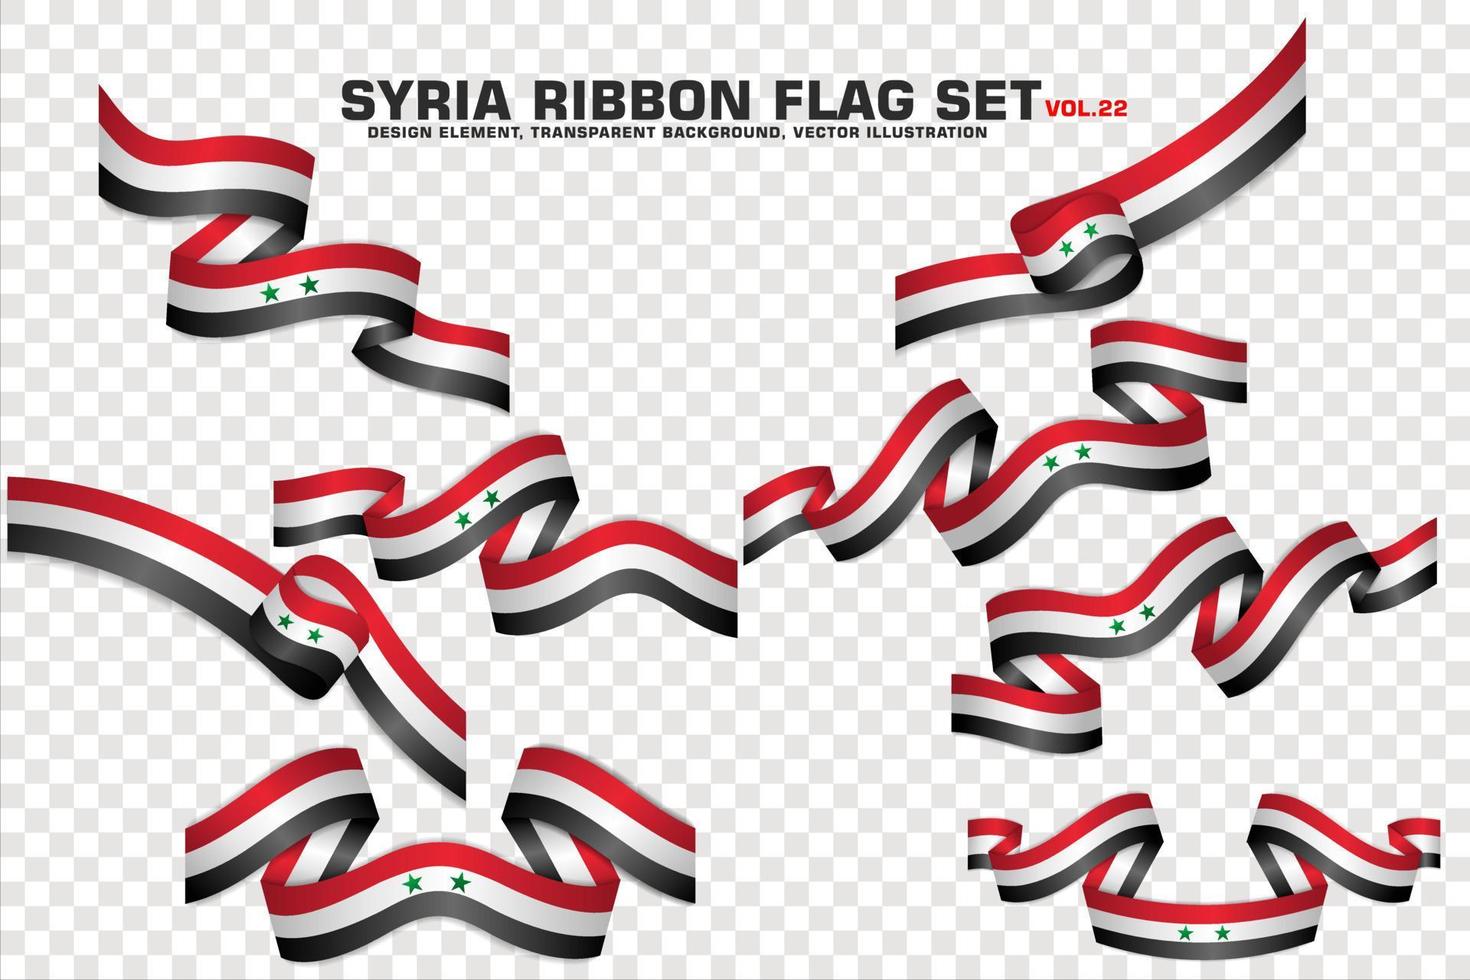 ensemble de drapeaux de ruban de syrie, conception d'éléments, style 3d. illustration vectorielle vecteur